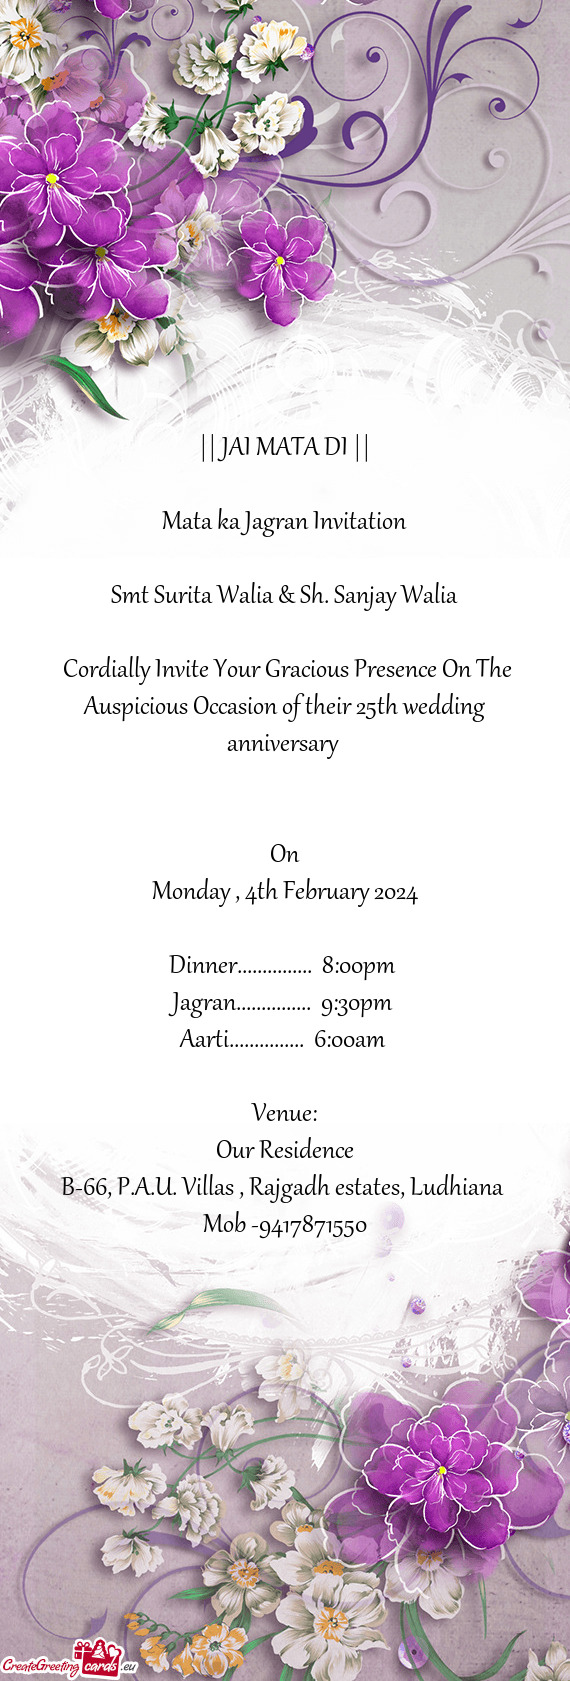 Smt Surita Walia & Sh. Sanjay Walia